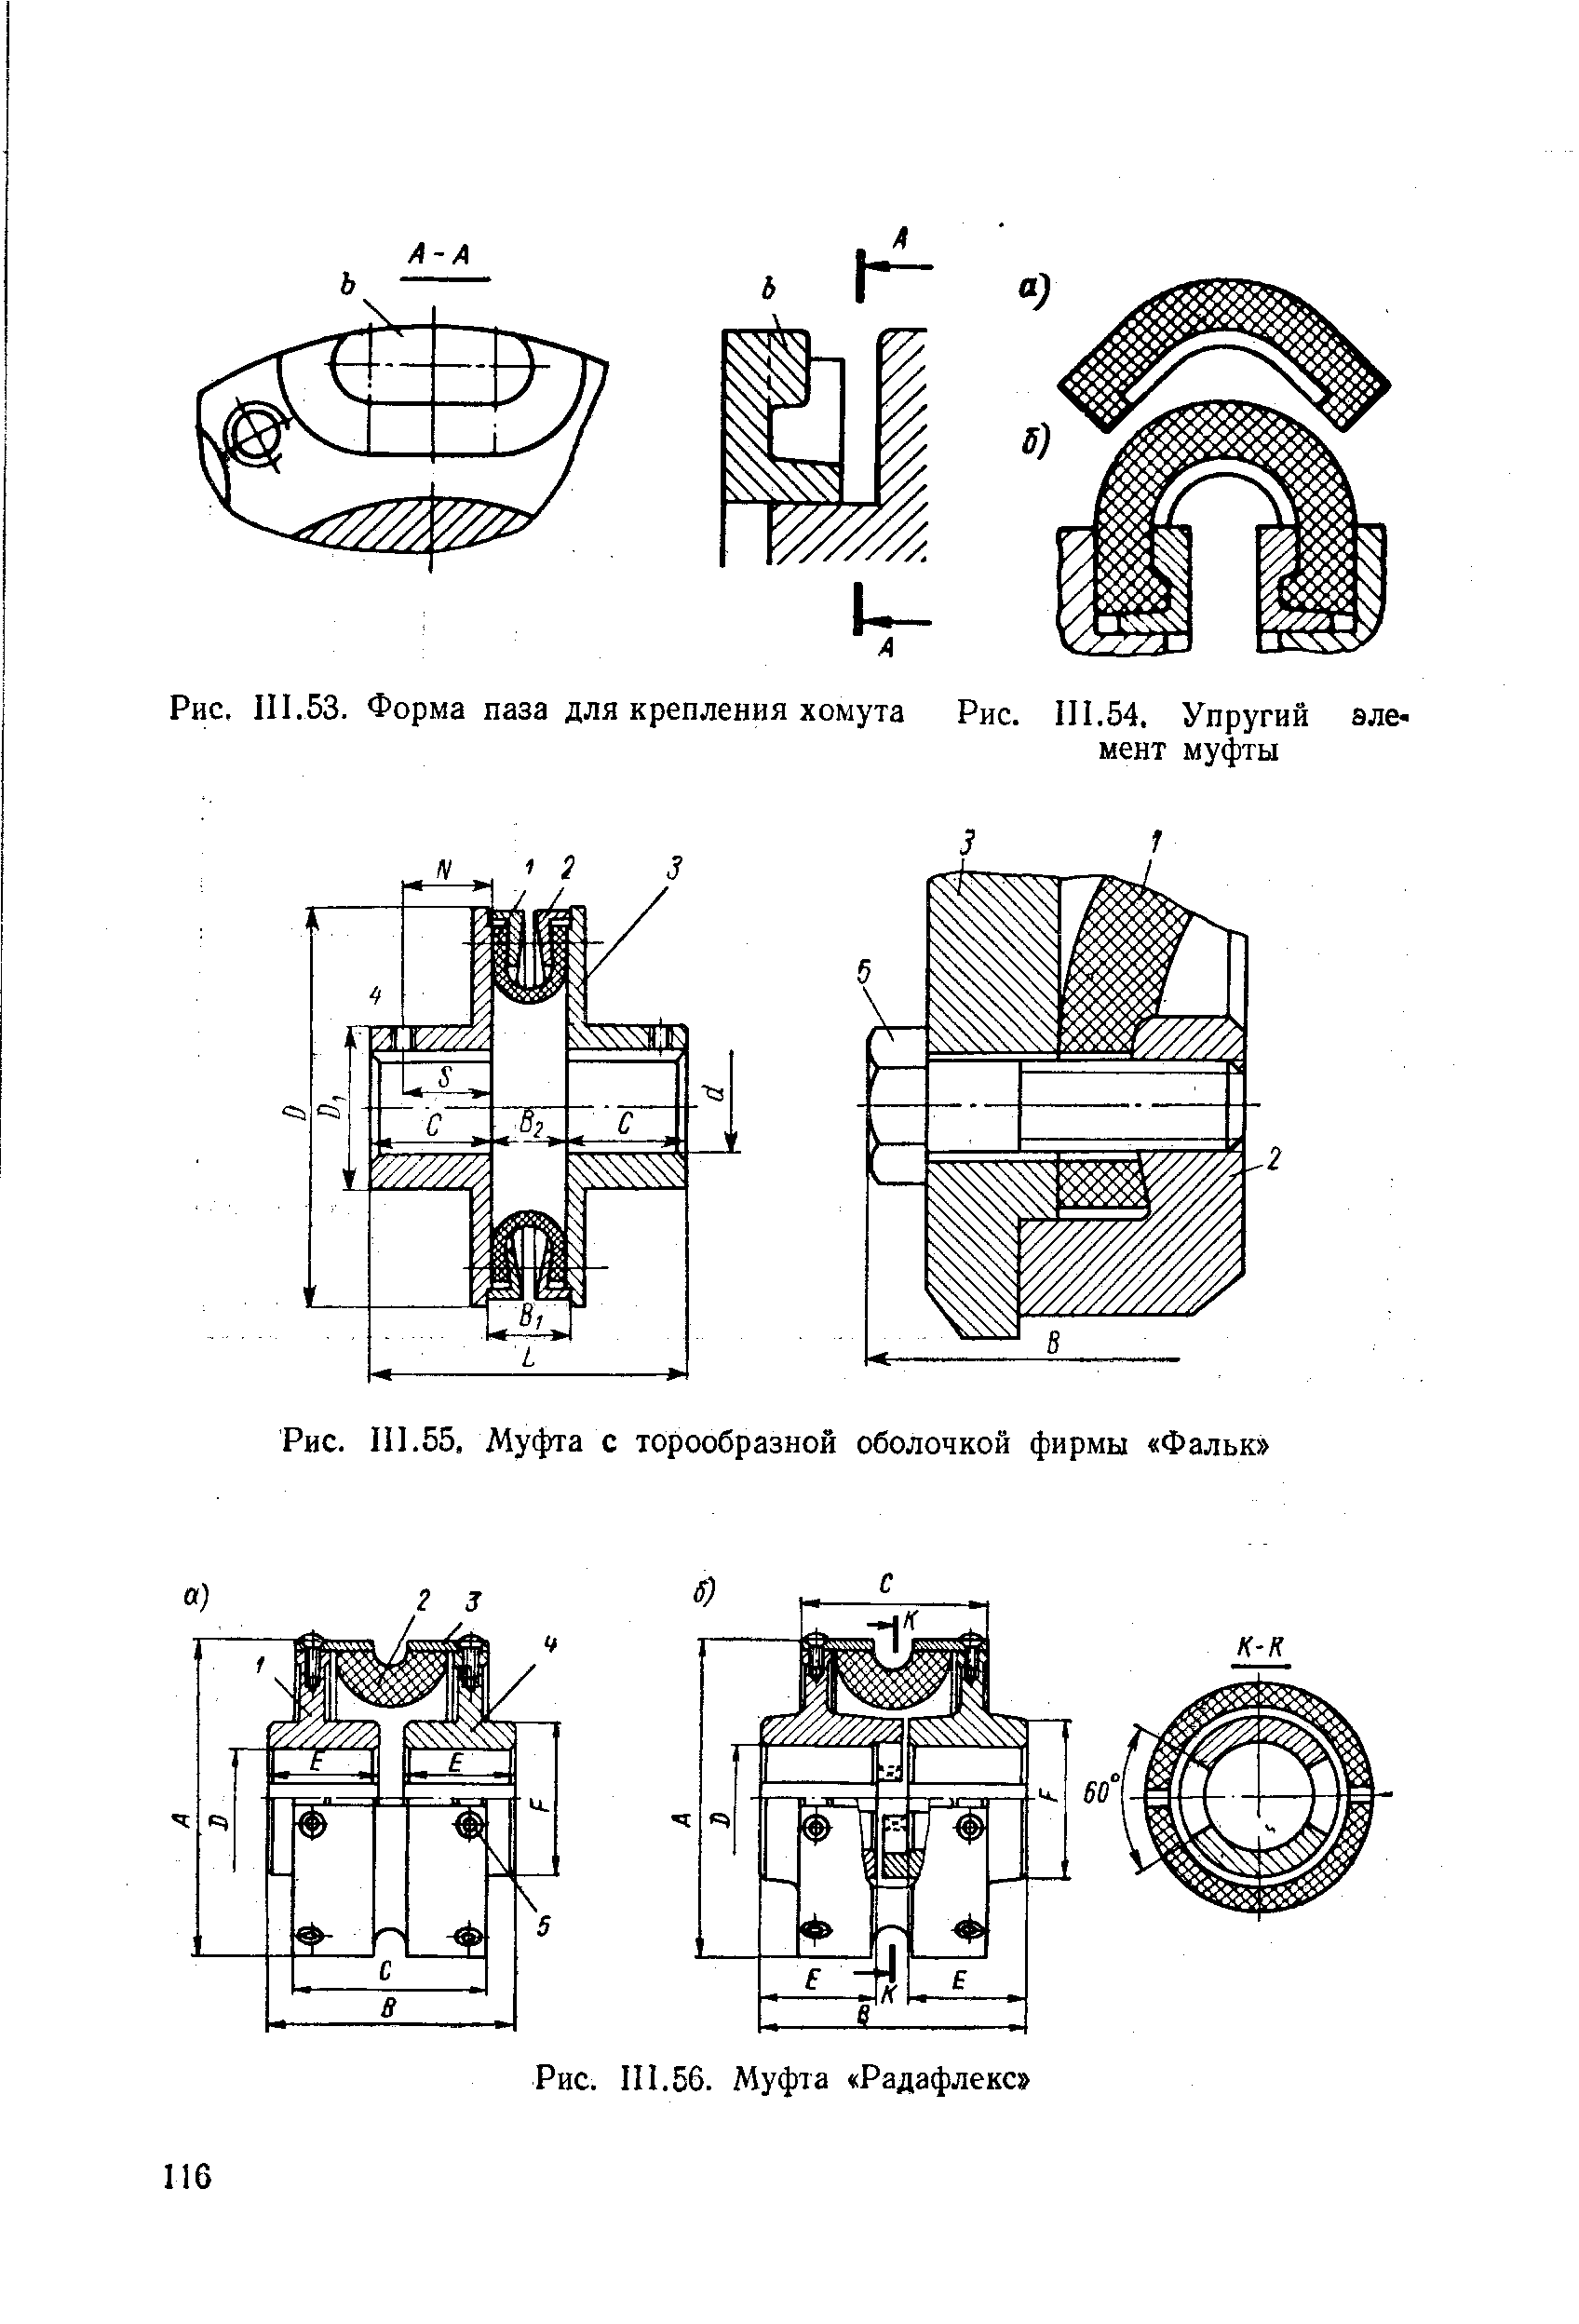 Рис. III.55, Муфта с торообразной оболочкой фирмы Фальк 
